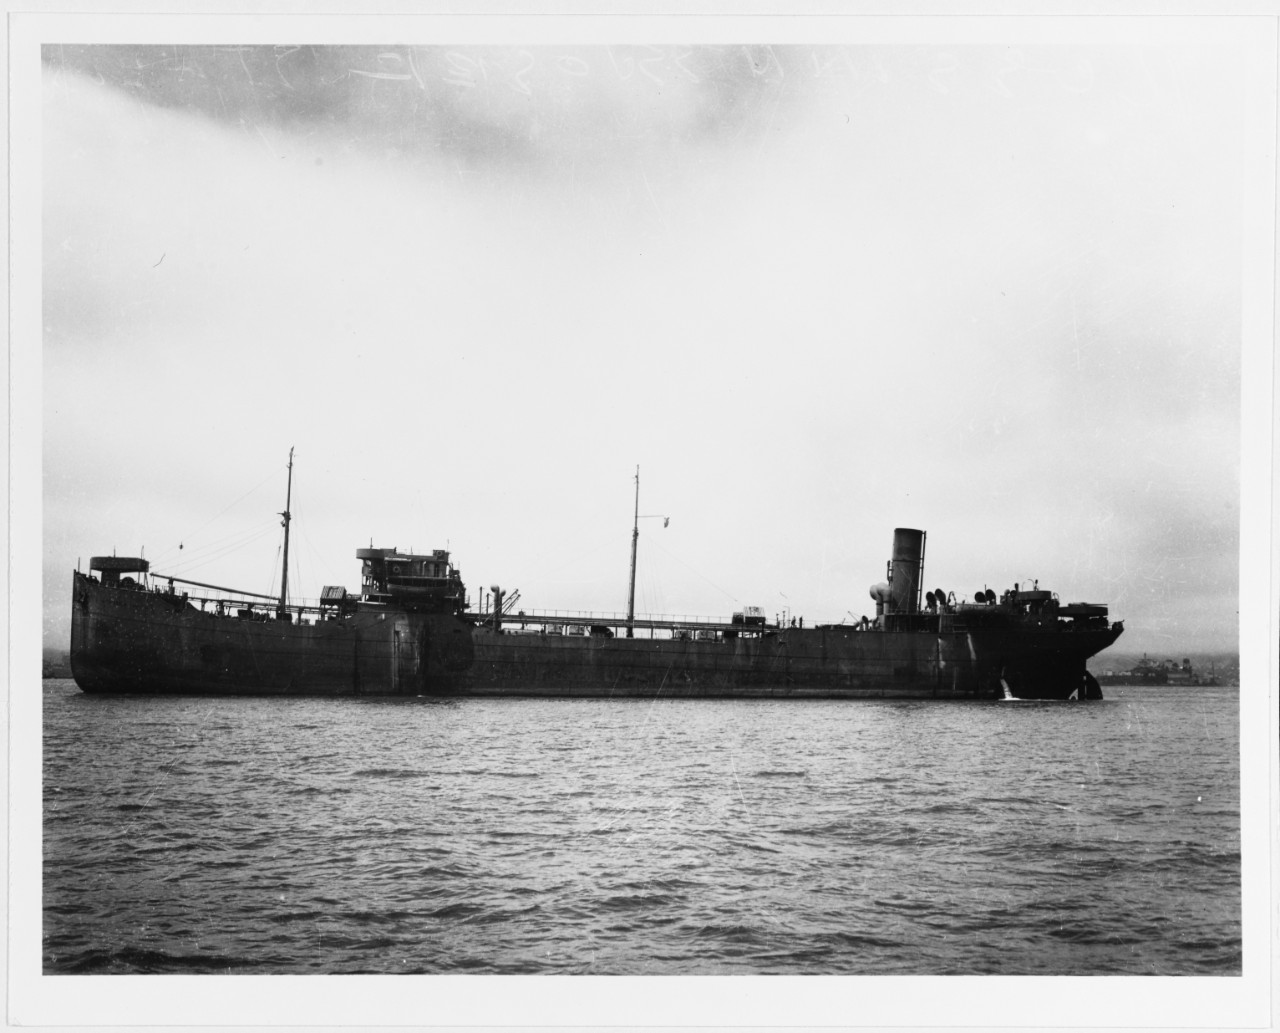 S.S. JOSIF STALIN (U.S.S.R. Merchant Tanker, 1921-1971)